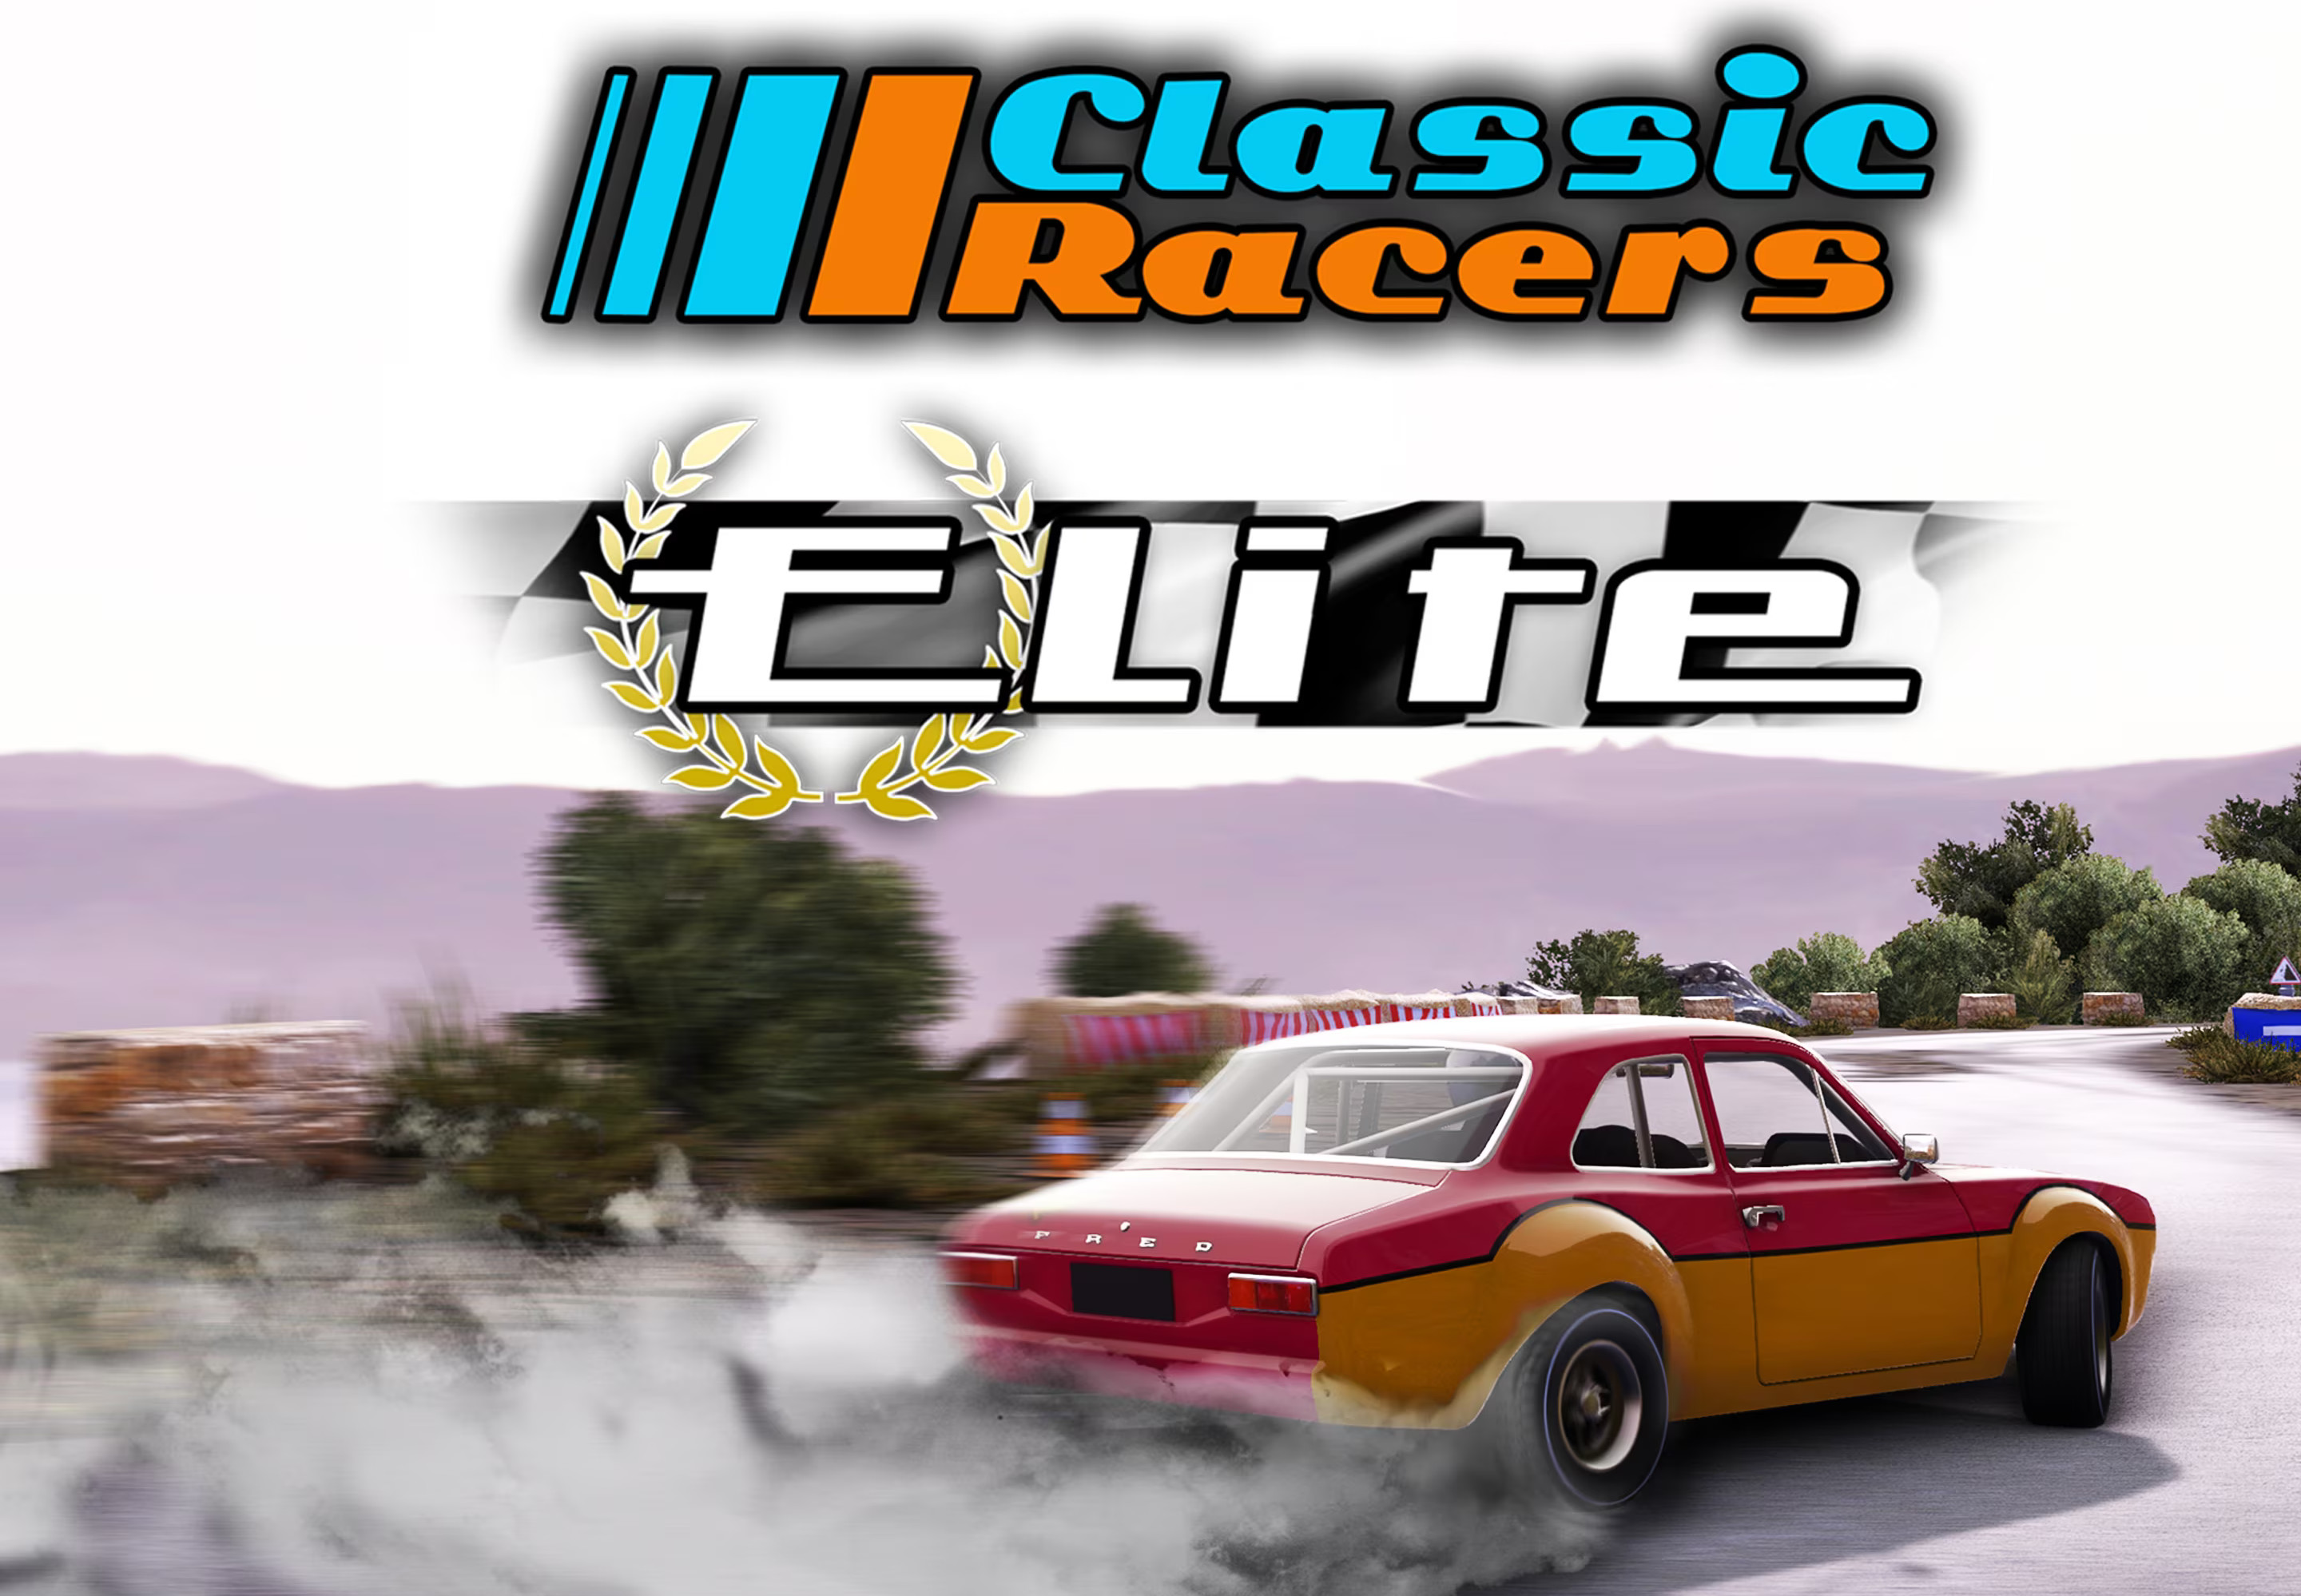 Classic Racers Elite EU PS4 CD Key